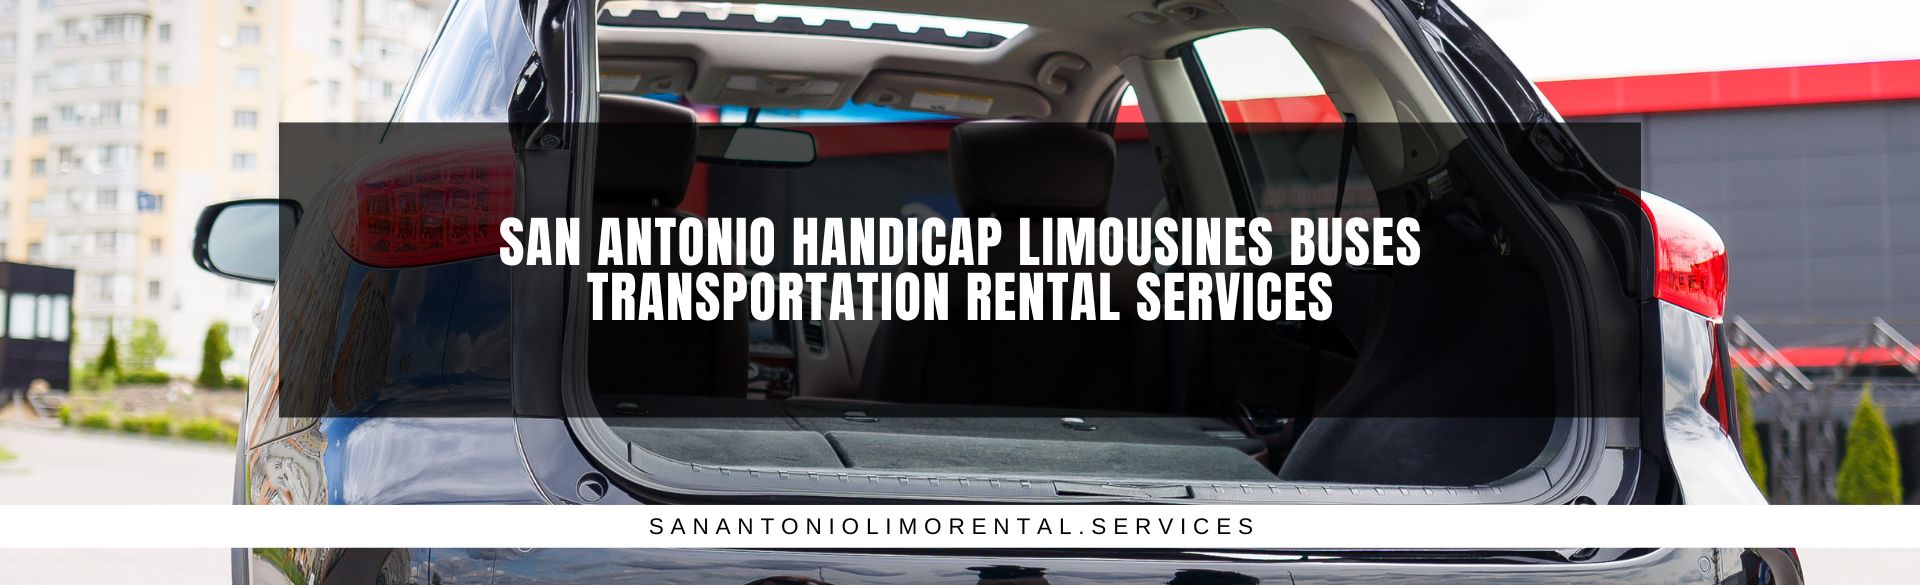 San Antonio Handicap Limousines Buses Transportation Rental Services